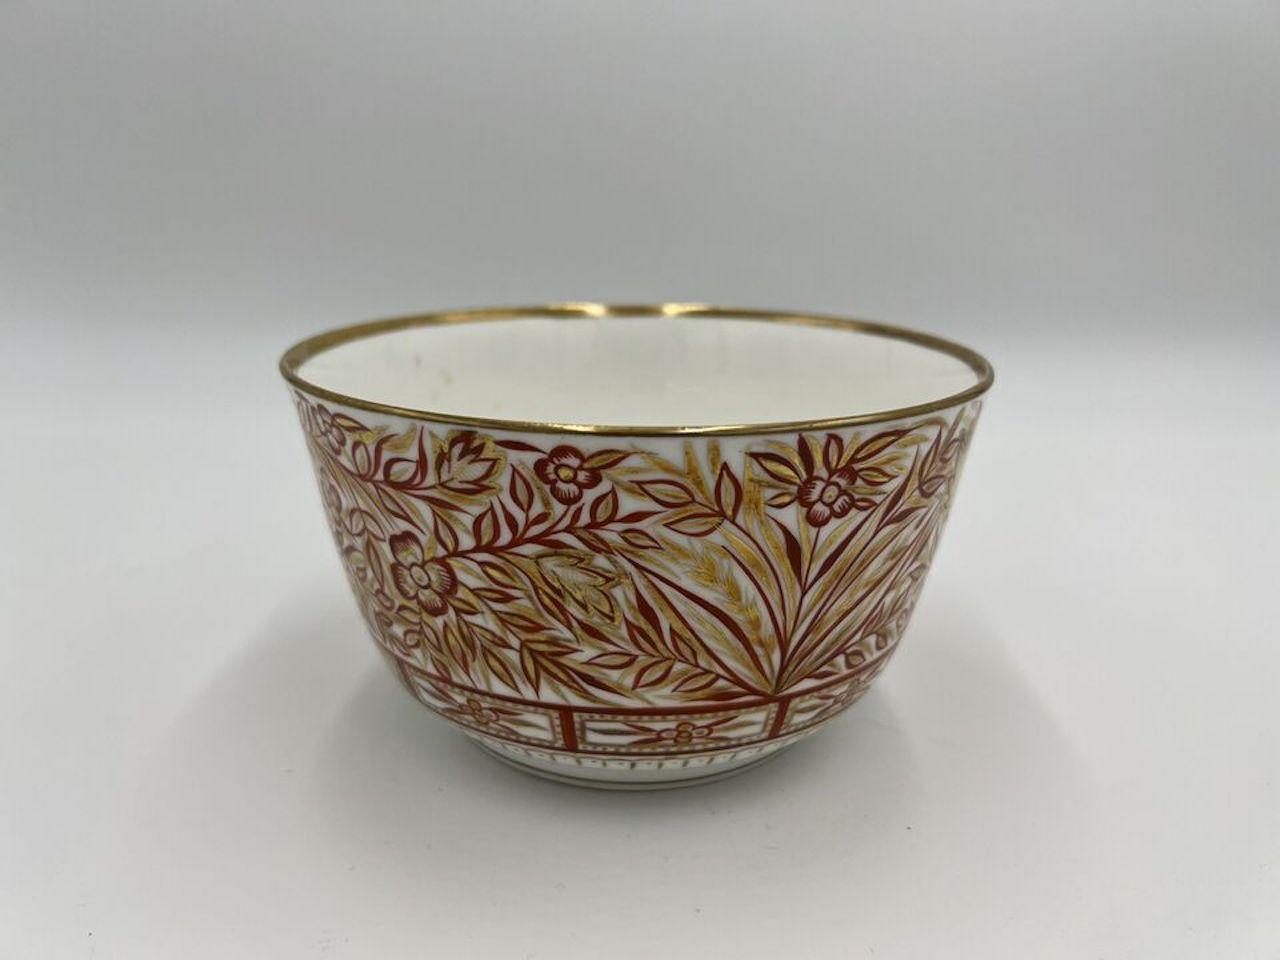 Mintons (Englisch, 1793-2005), um 1830. Eine sehr schöne antike Porzellanschale mit Rostgrund und starker Vergoldung. Auf einer Seite der Schale ist eine große Pagode gemalt, die von Blattkörben und Ranken flankiert wird. Ein vergoldeter